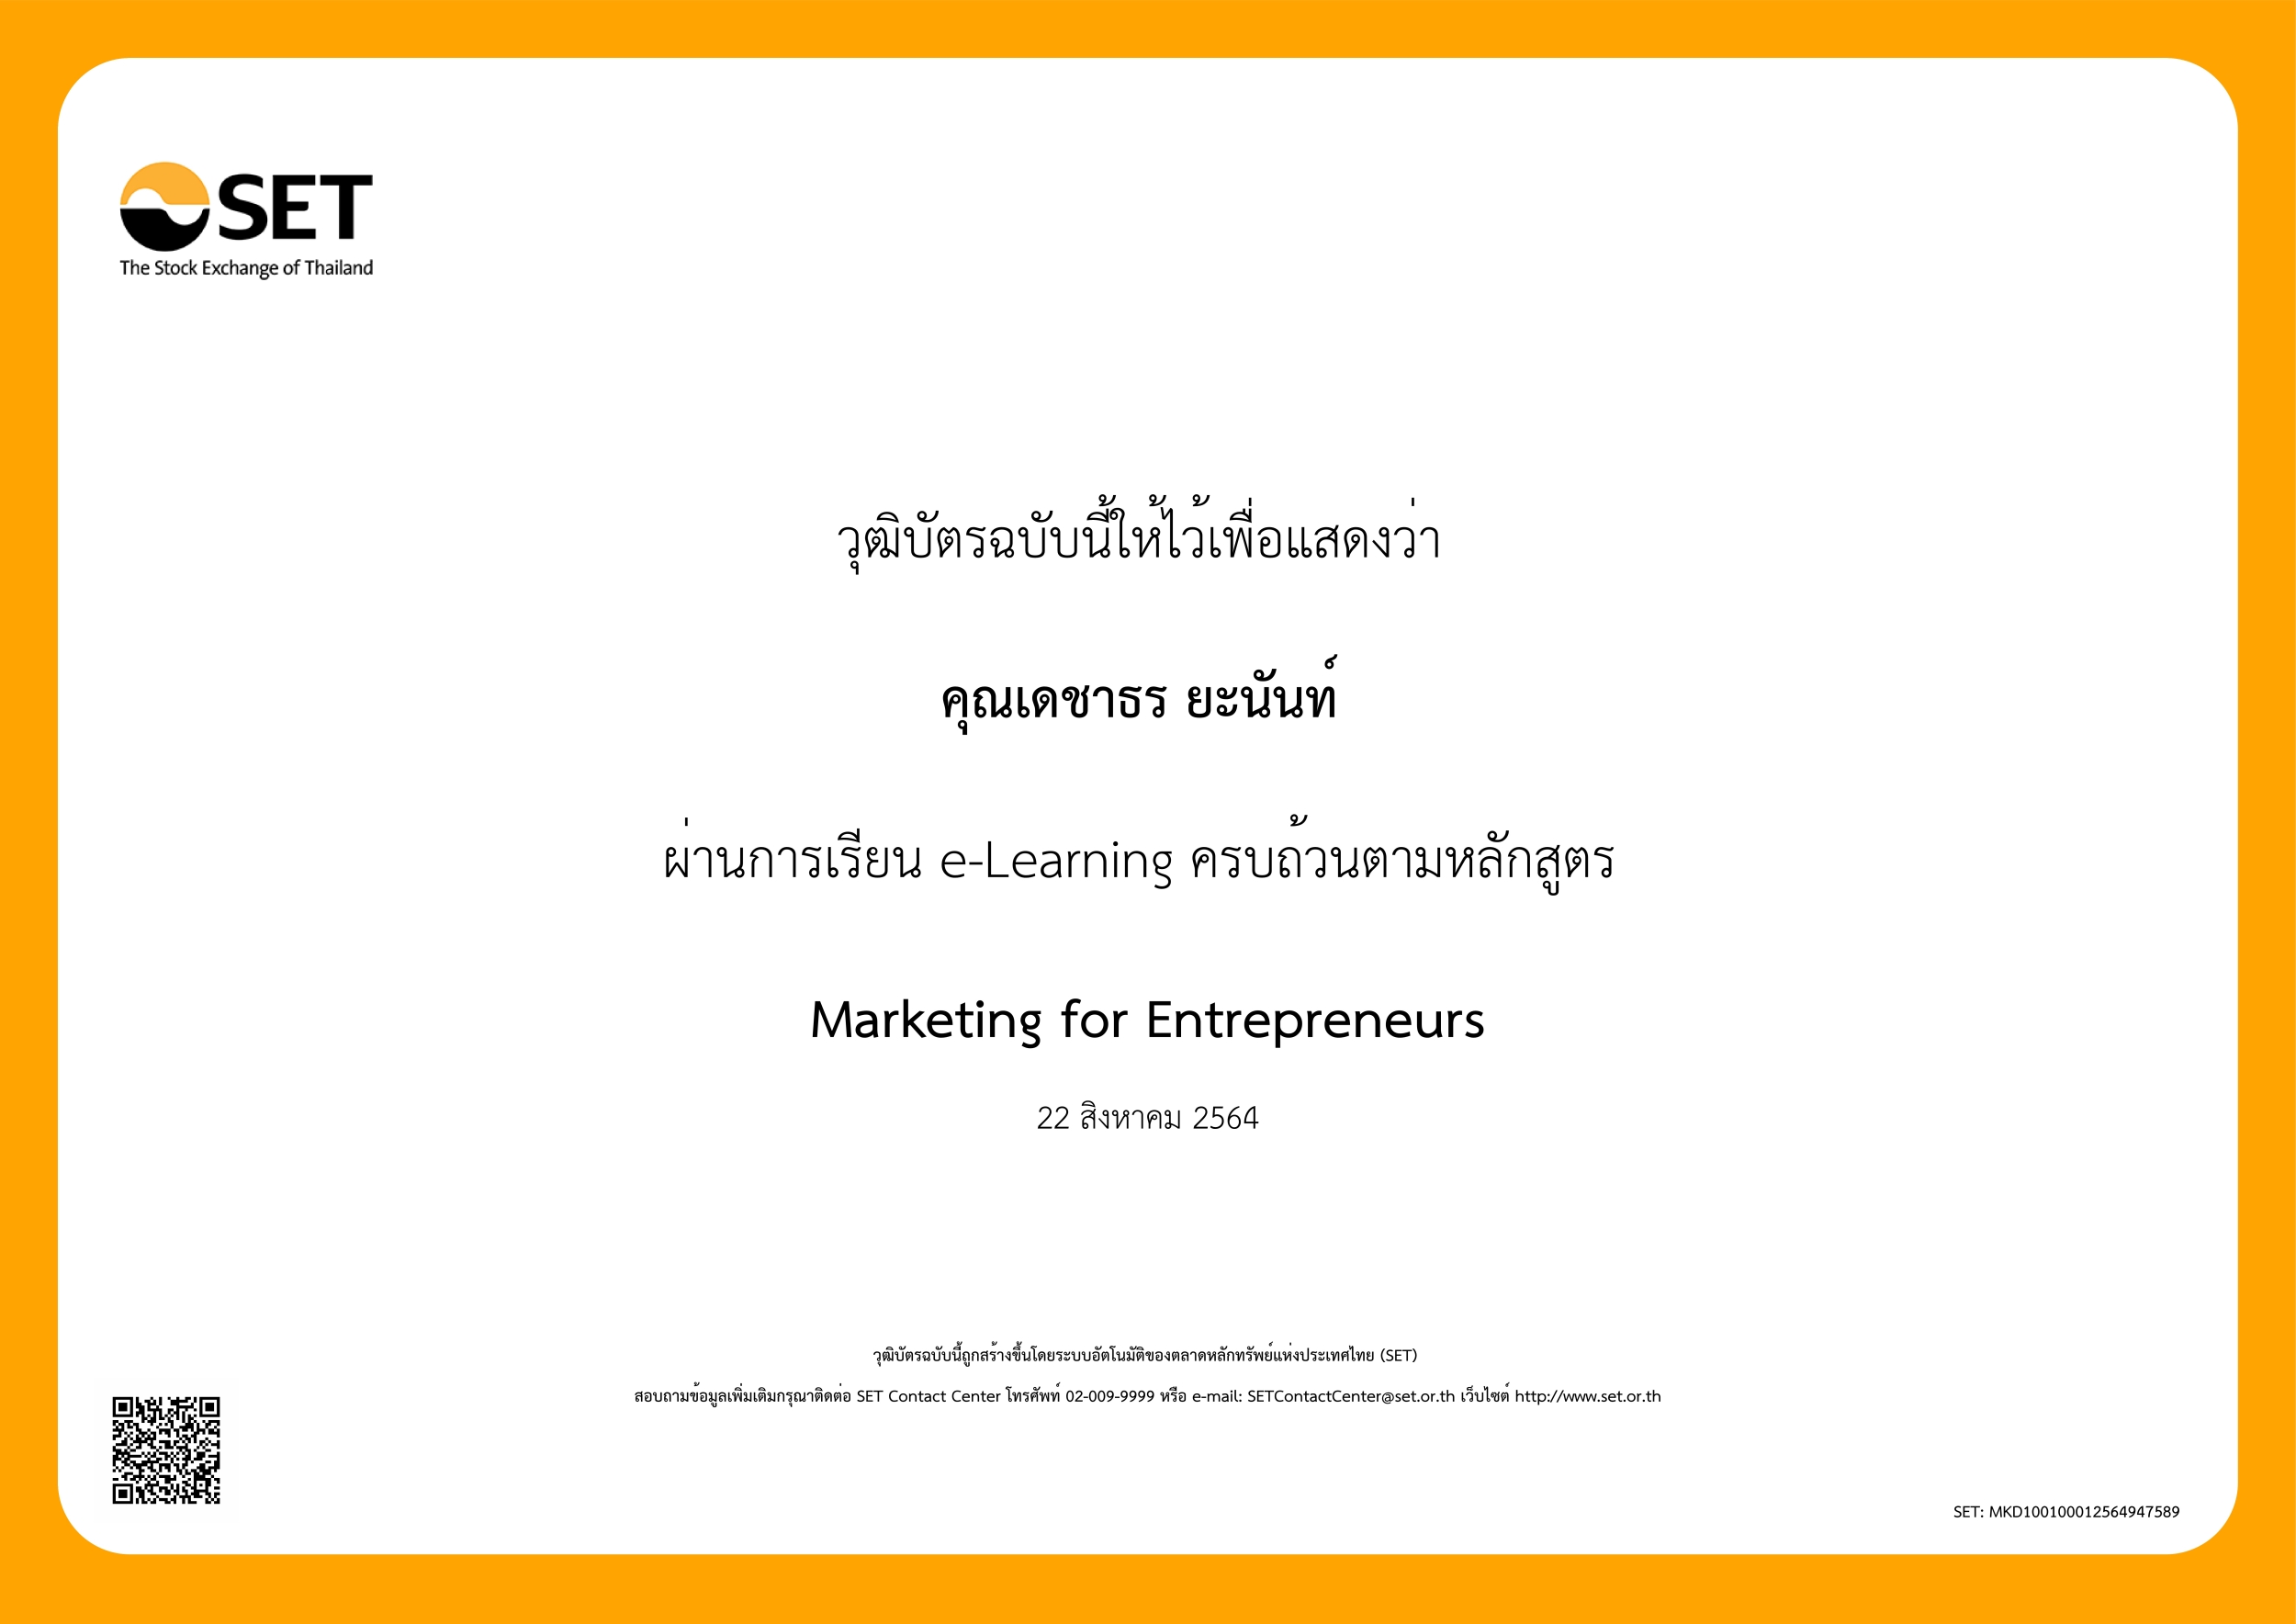 หลักสูตร "Marketing for Entrepreneurs"